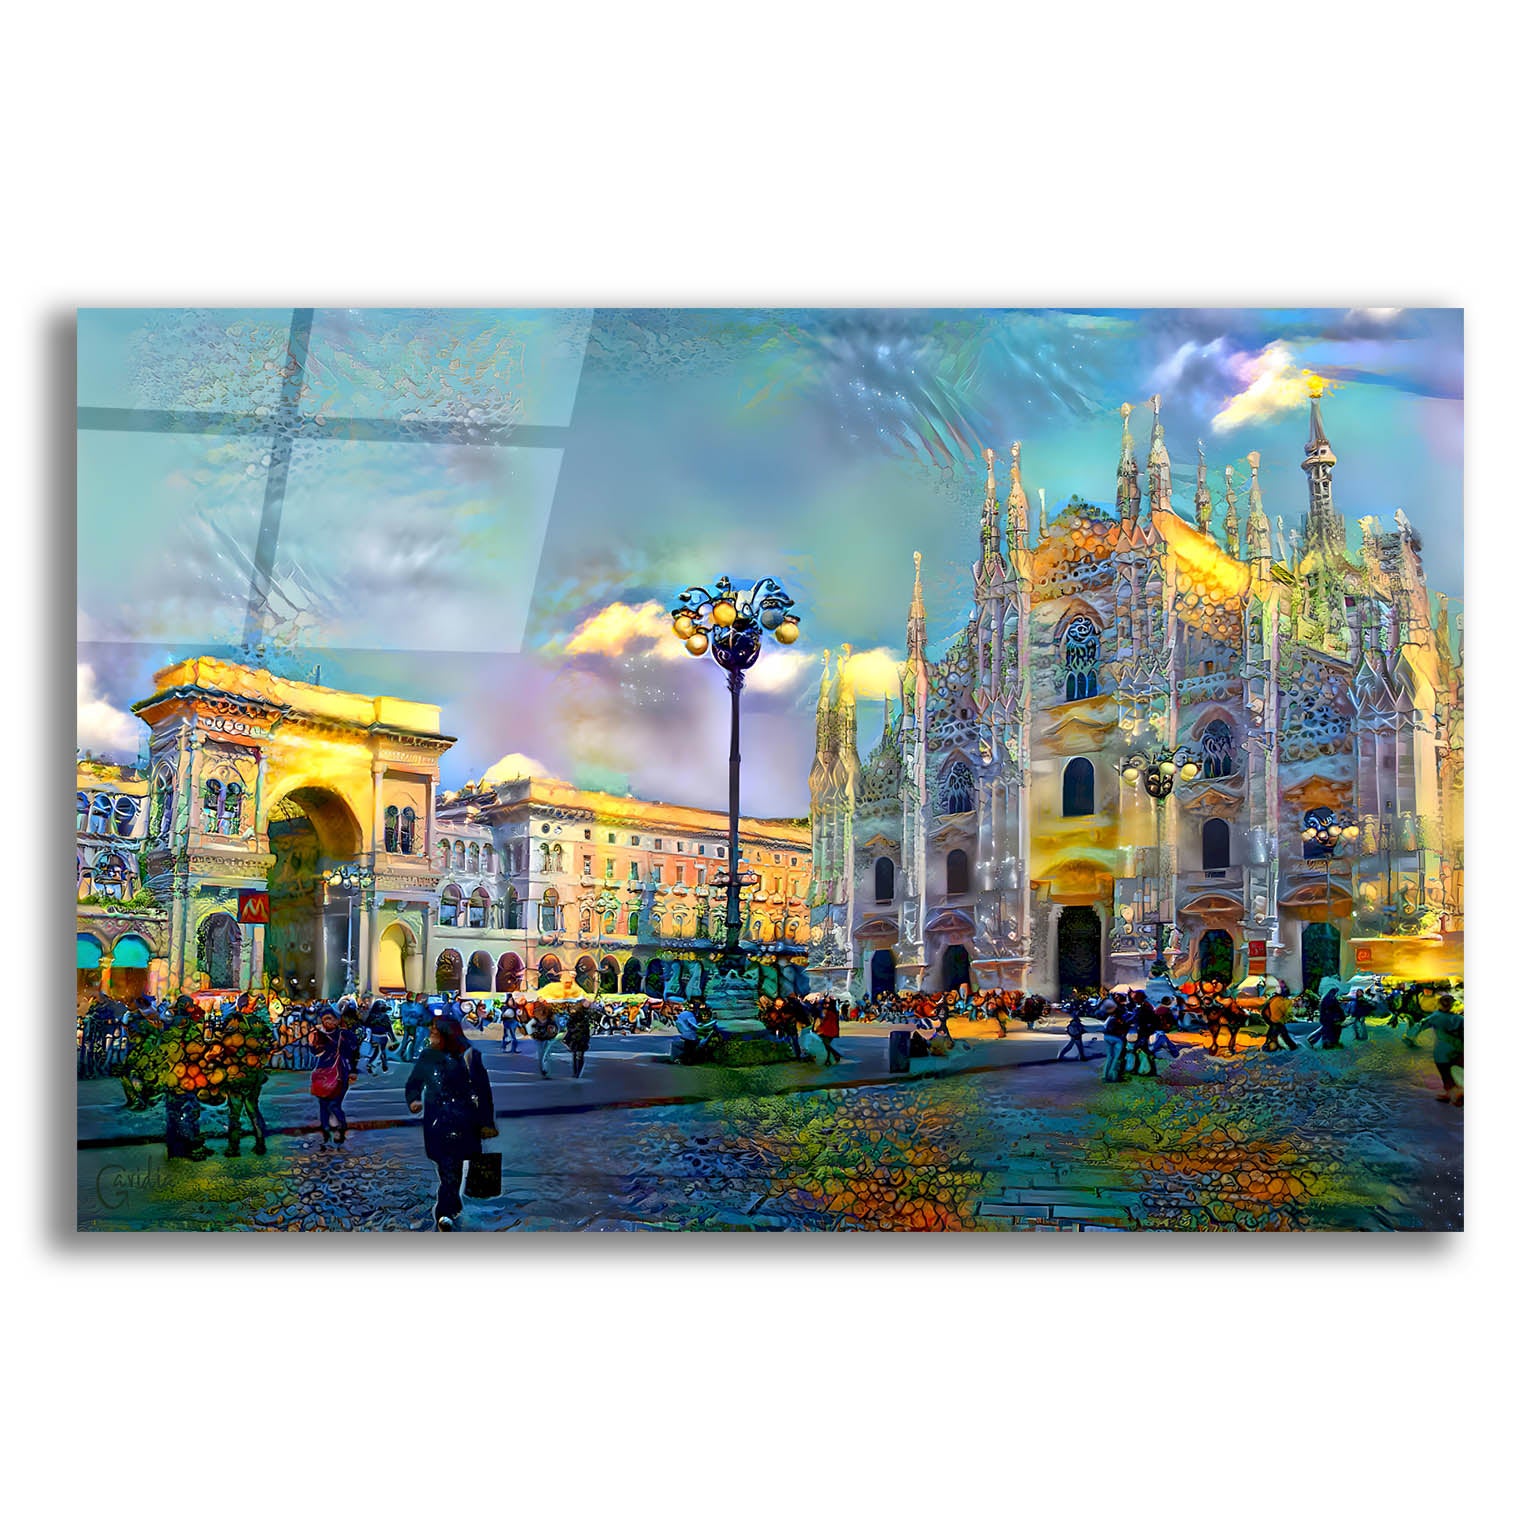 Epic Art 'Milan Italy Piazza del Duomo' by Pedro Gavidia, Acrylic Glass Wall Art,24x16